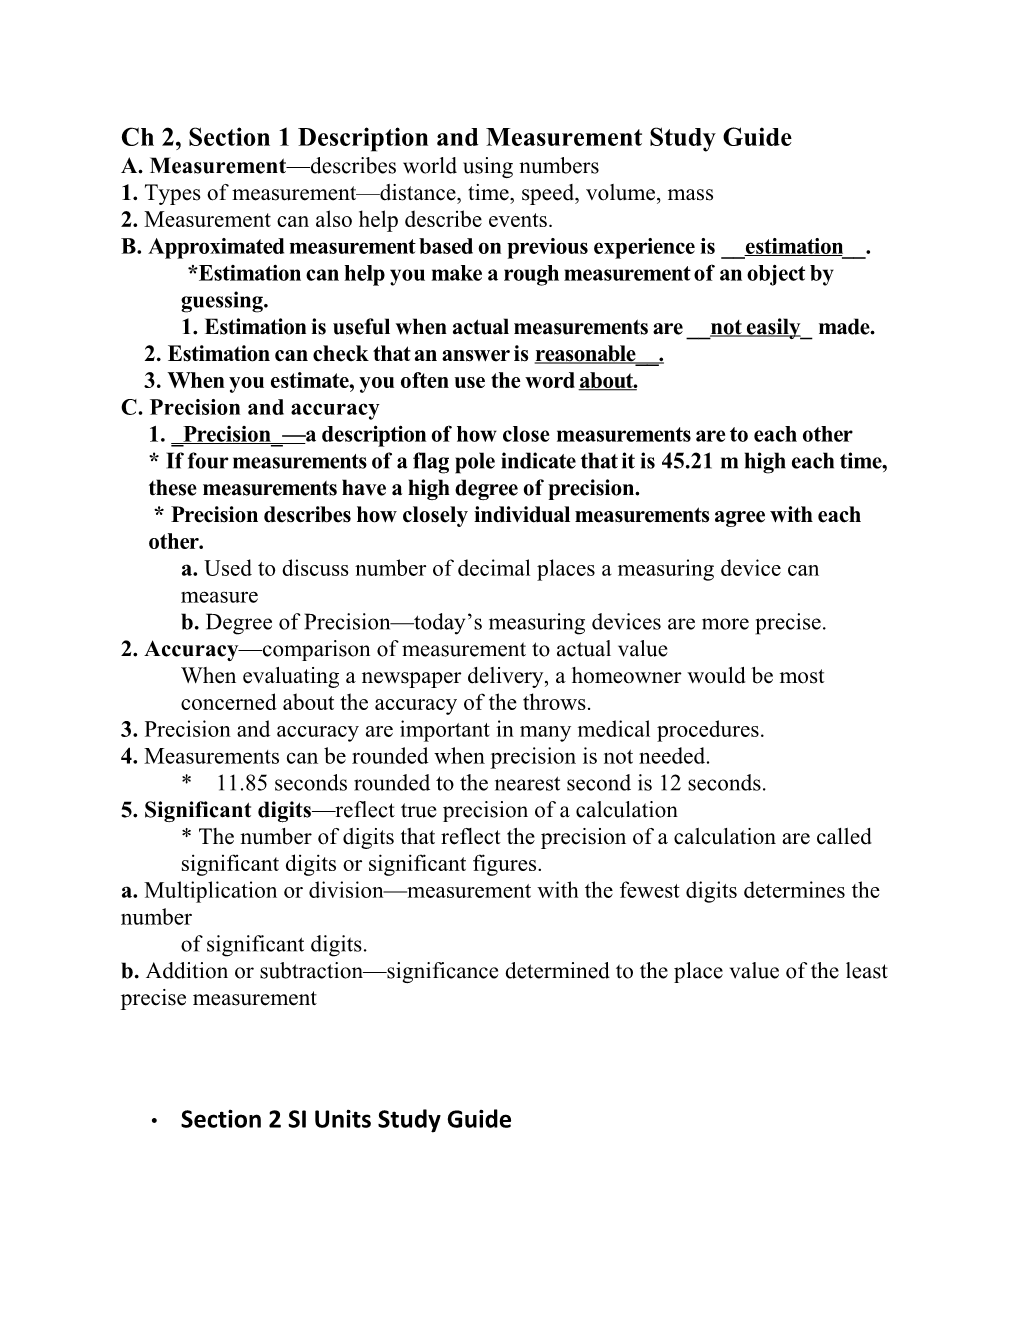 Ch 2, Section 1 Description and Measurement Study Guide